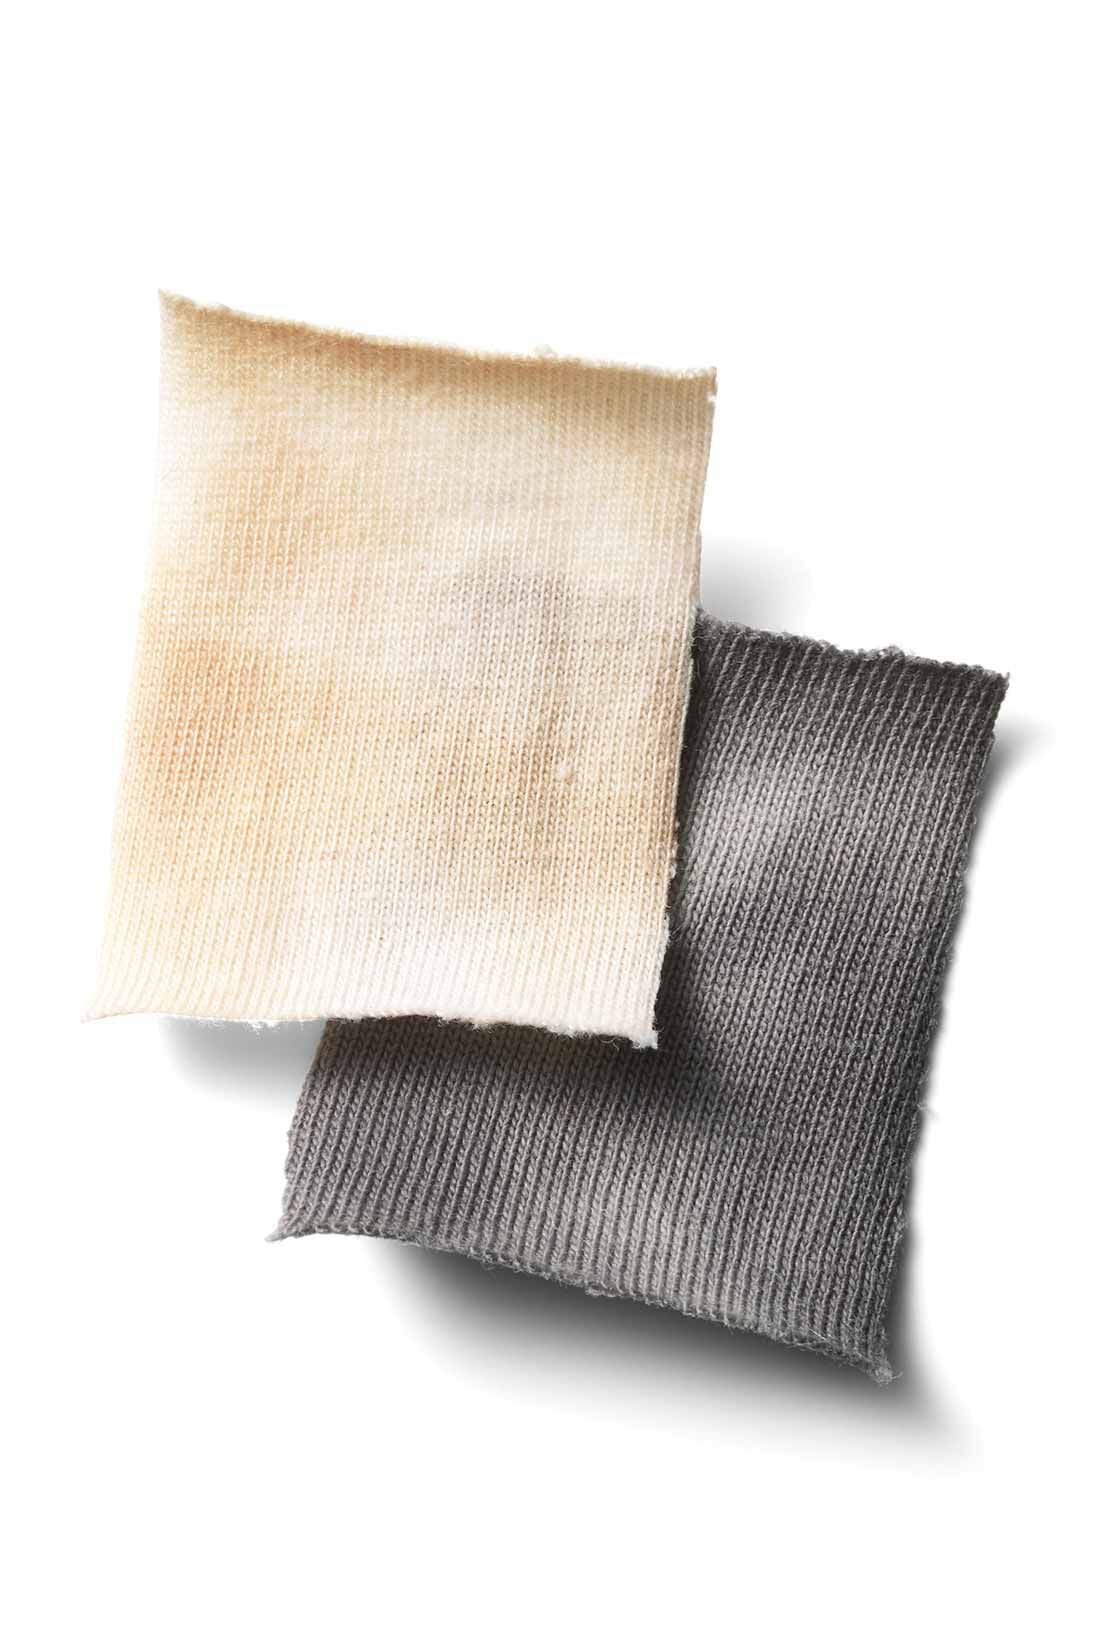 MEDE19F|MEDE19F　タイダイTシャツ〈ベージュ〉|適度な厚みのある、ナチュラルな綿100％のカットソー。洗っても型くずれしにくい素材です。